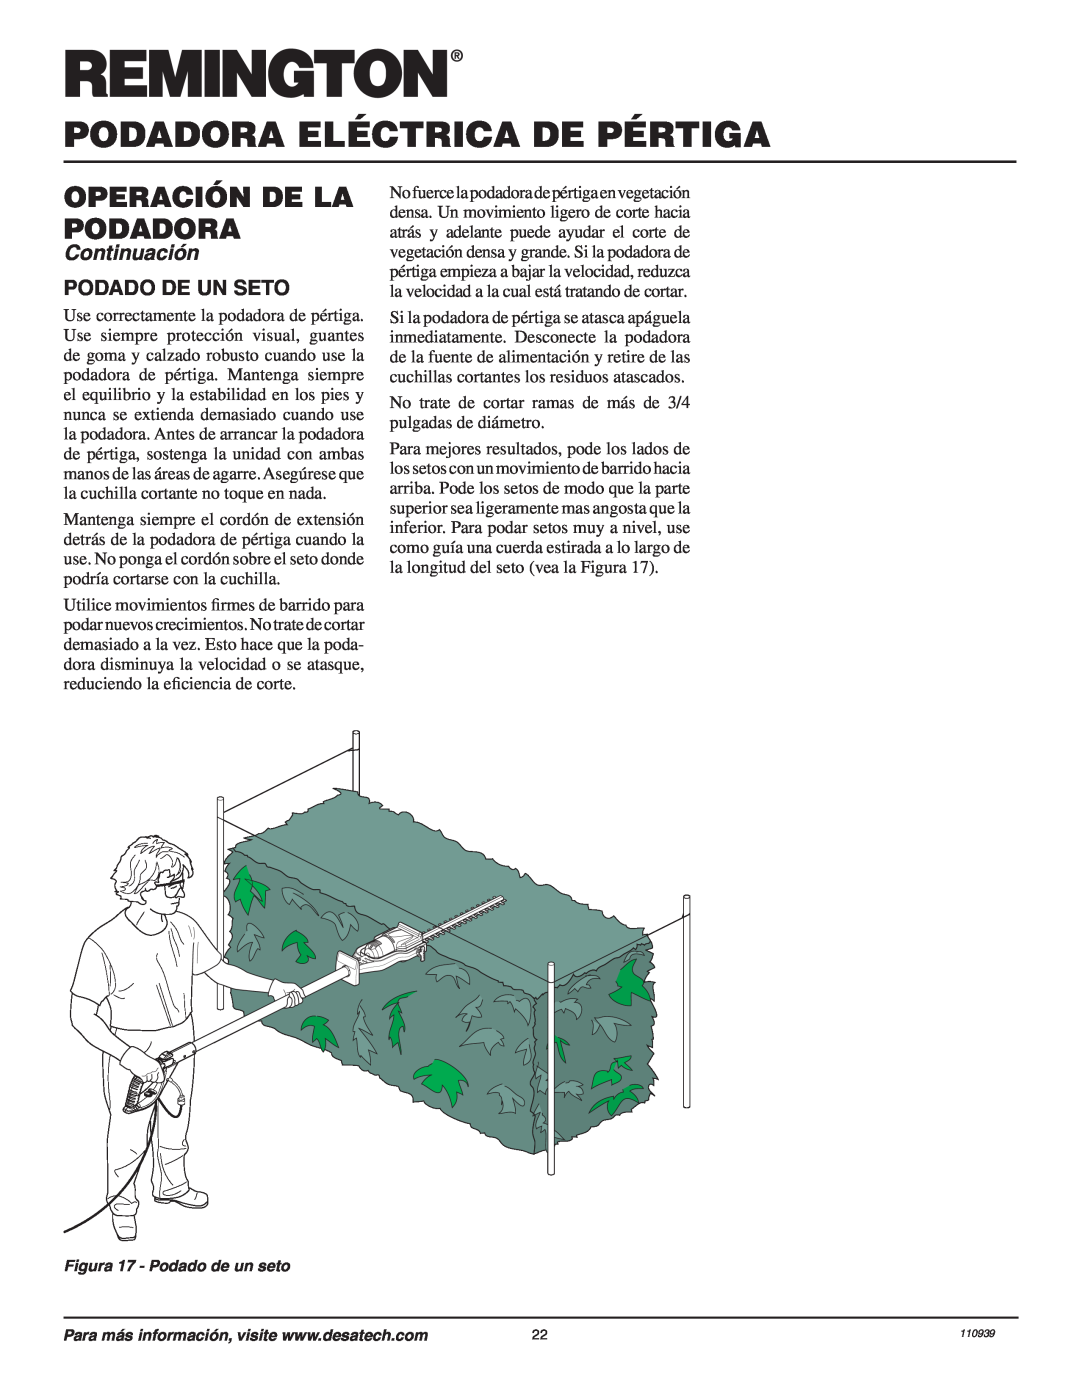 Remington 110946-01A owner manual Podado De Un Seto, Podadora Eléctrica De Pértiga, Operación De La Podadora, Continuación 